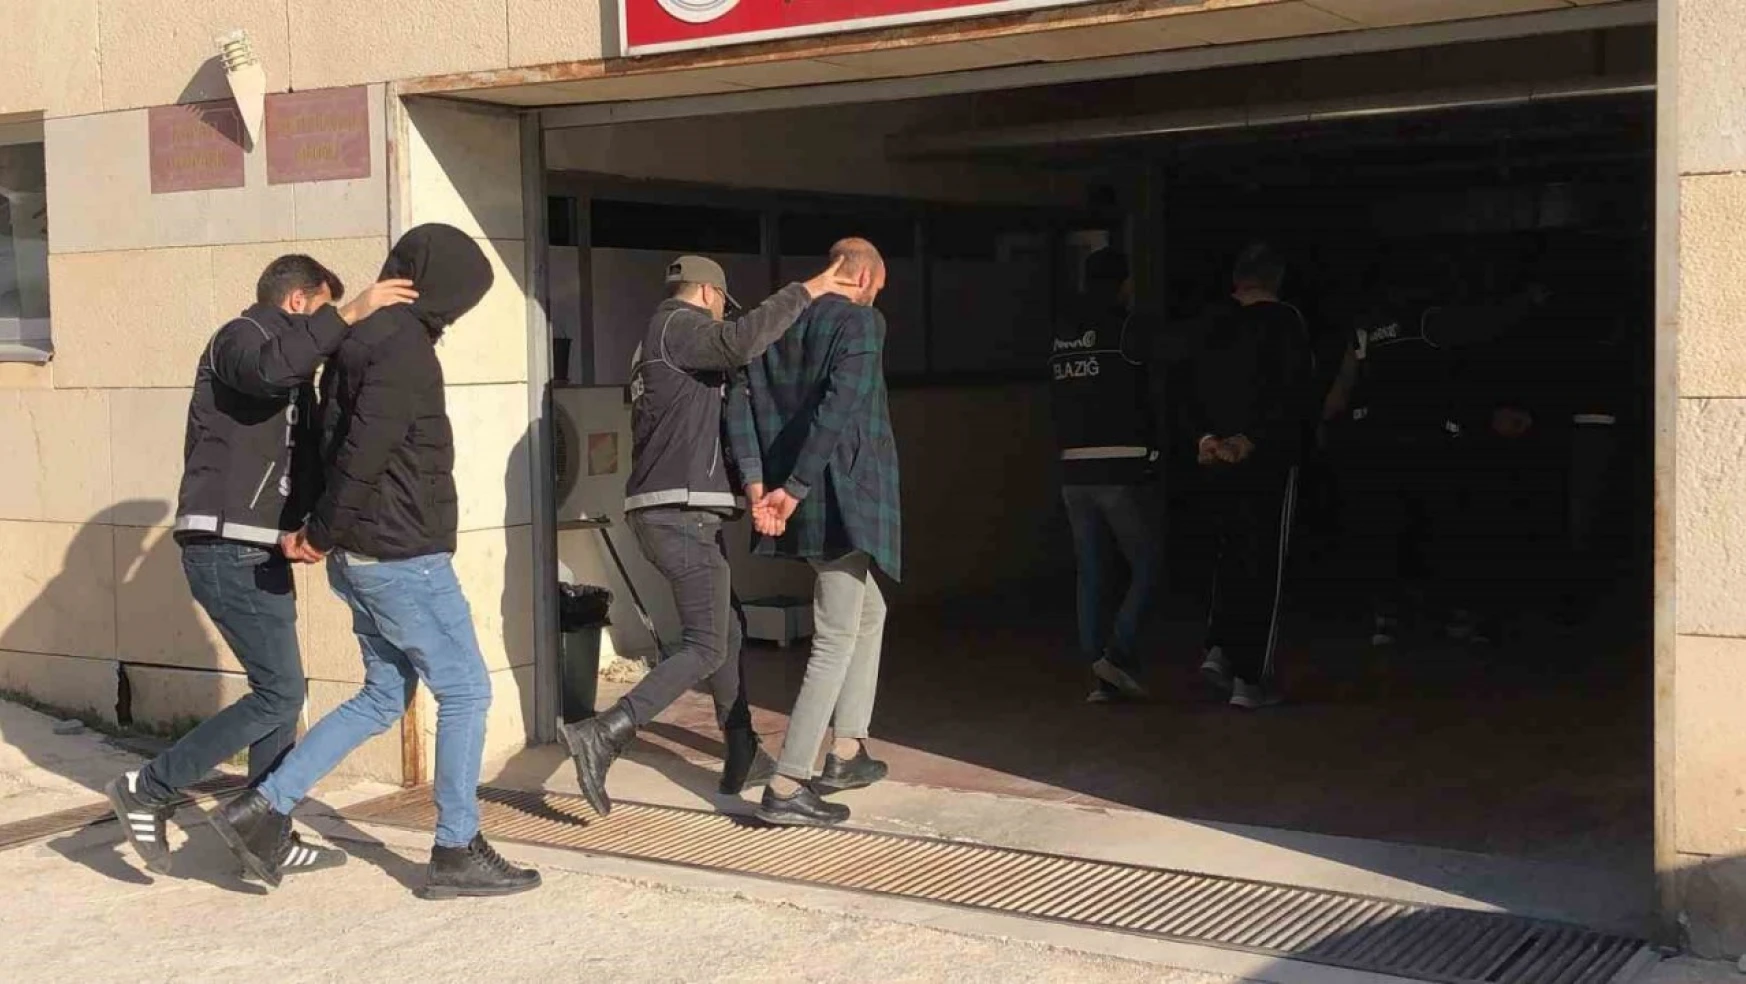 Elazığ'da 24 kilo eroin ele geçirildi: 4 gözaltı